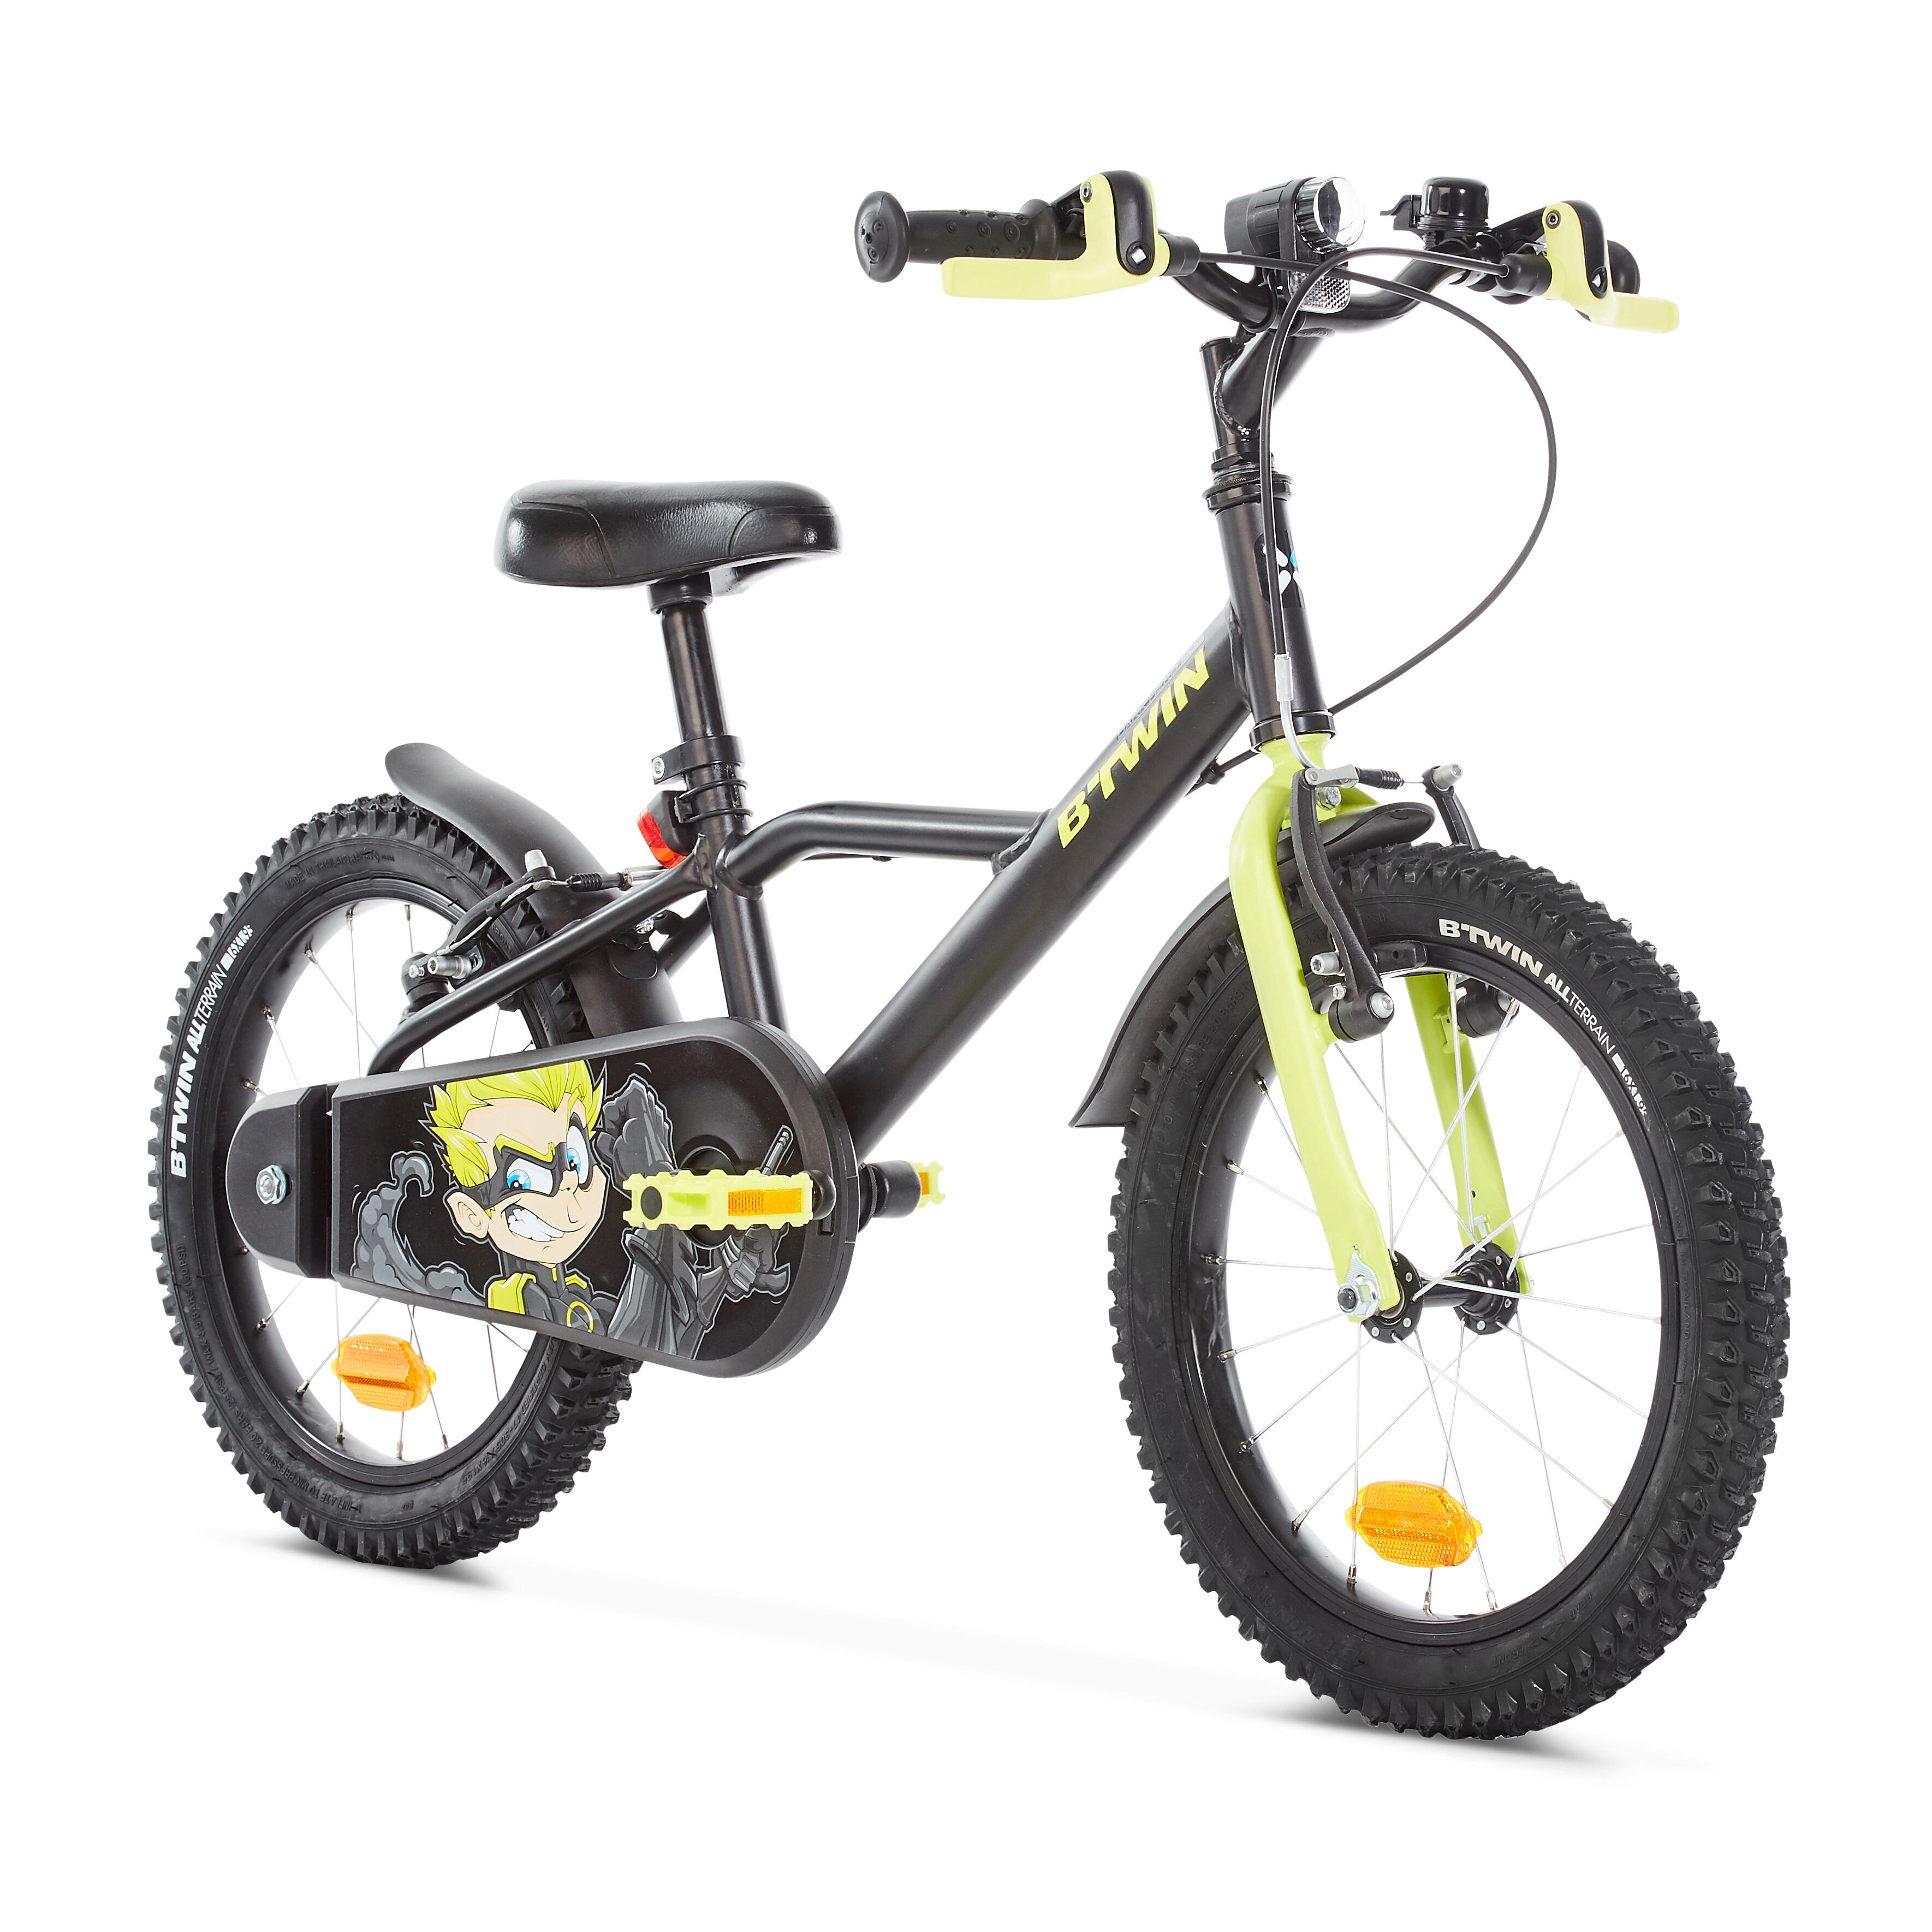 Какой велосипед купить ребенку в год. Btwin 16 велосипед детский. Детский велосипед от 4 до 6 лет прогулочный 16" heroboy 500 Btwin. Велосипед детский Декатлон b Twin. Детский велосипед b'Twin heroboy 500 16.